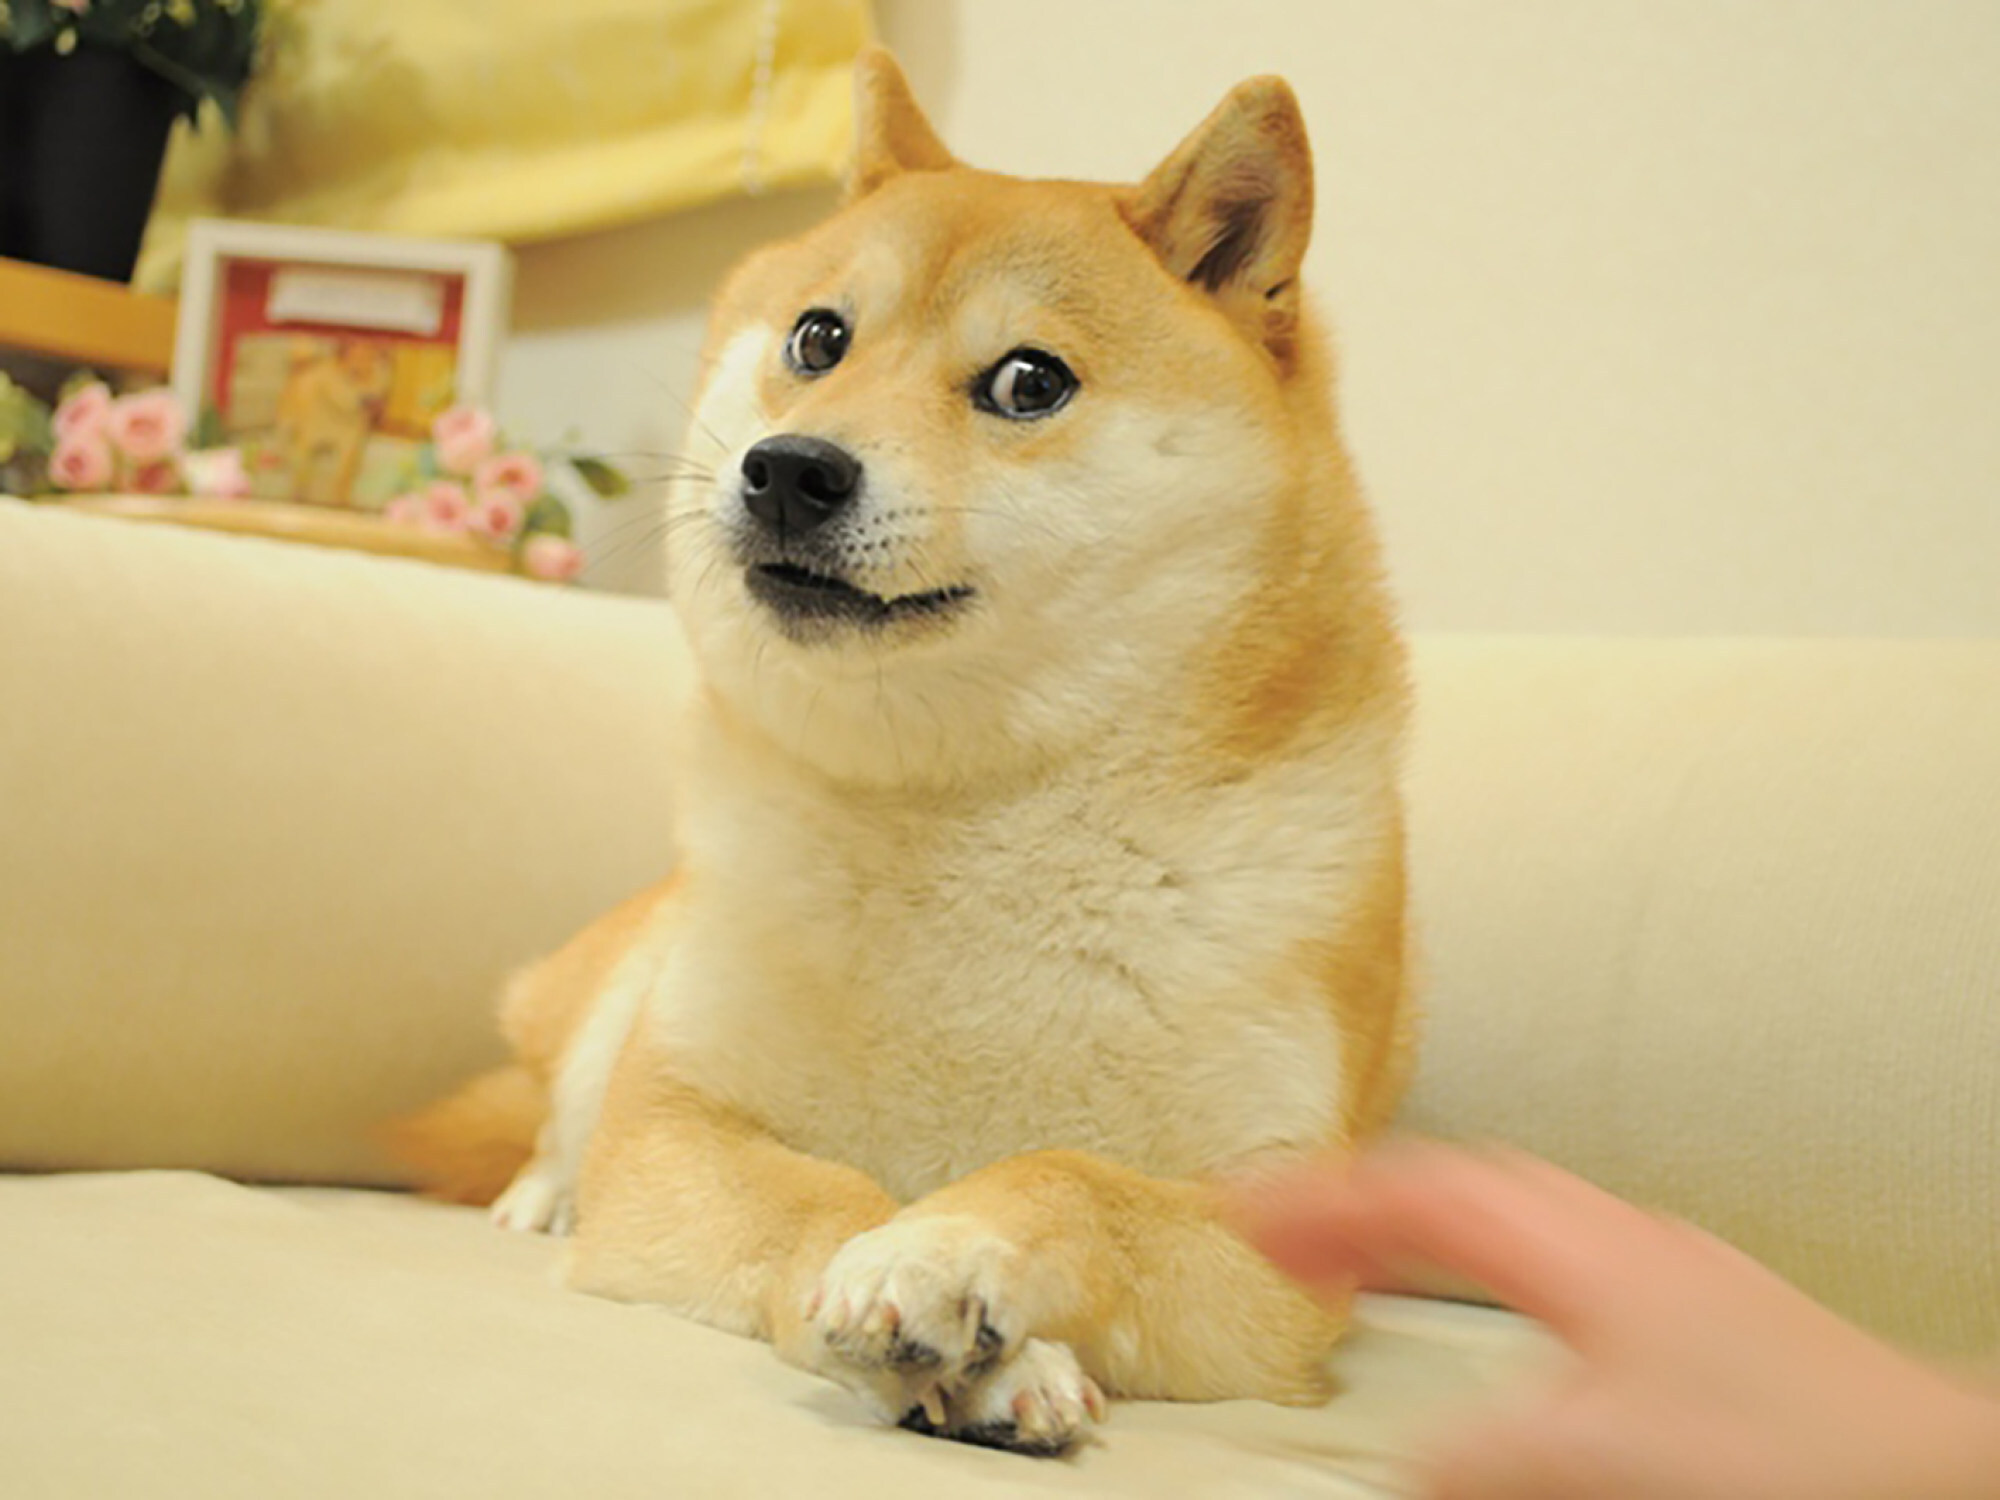 A Japanese Shiba Inu dog inspired the doge meme. Photo: Handout